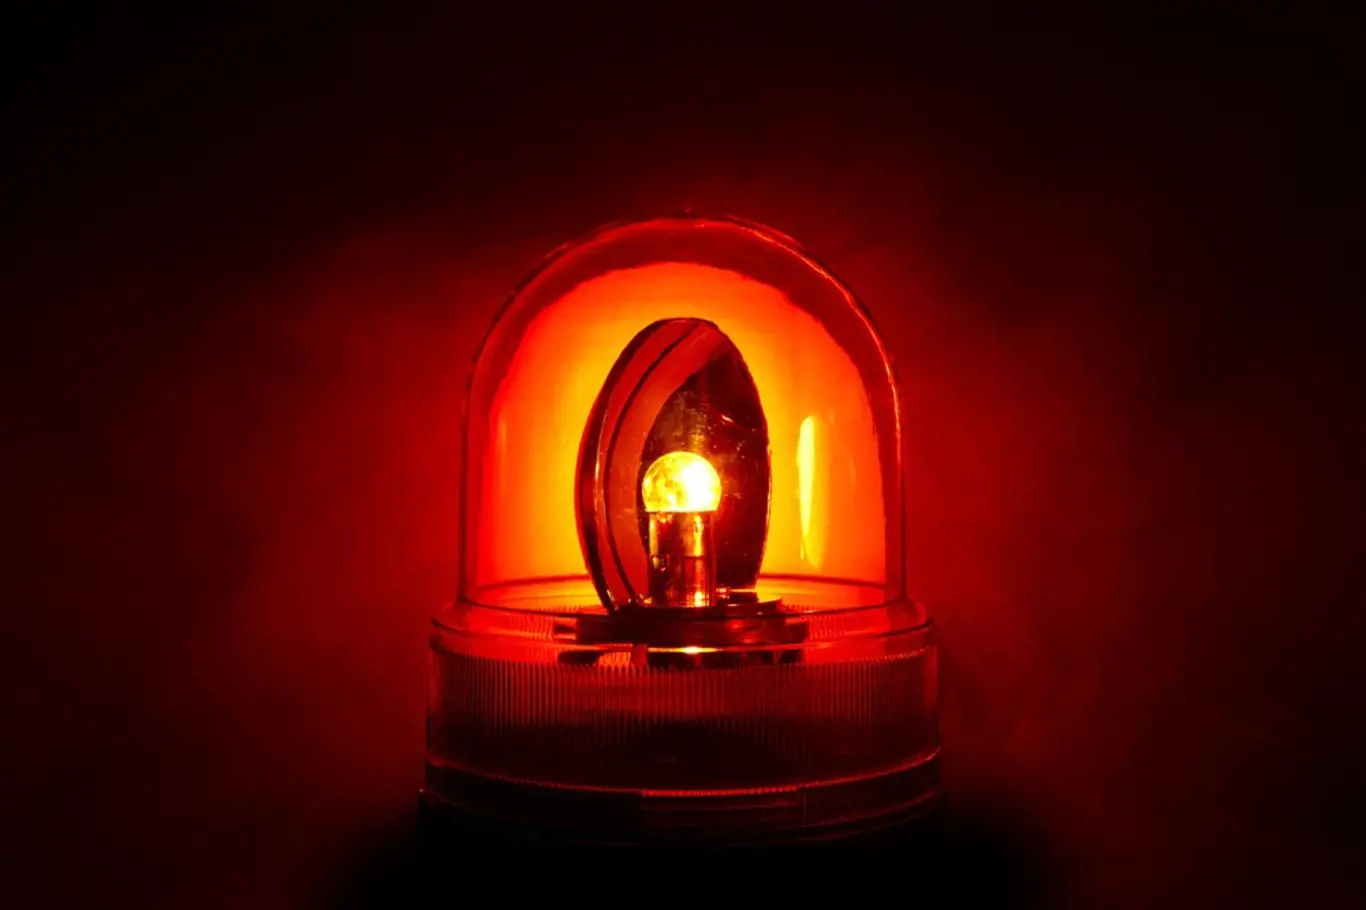 Ilustrační foto: Alarm, majáček bliká červeně kvůli hrozícímu nebezpečí